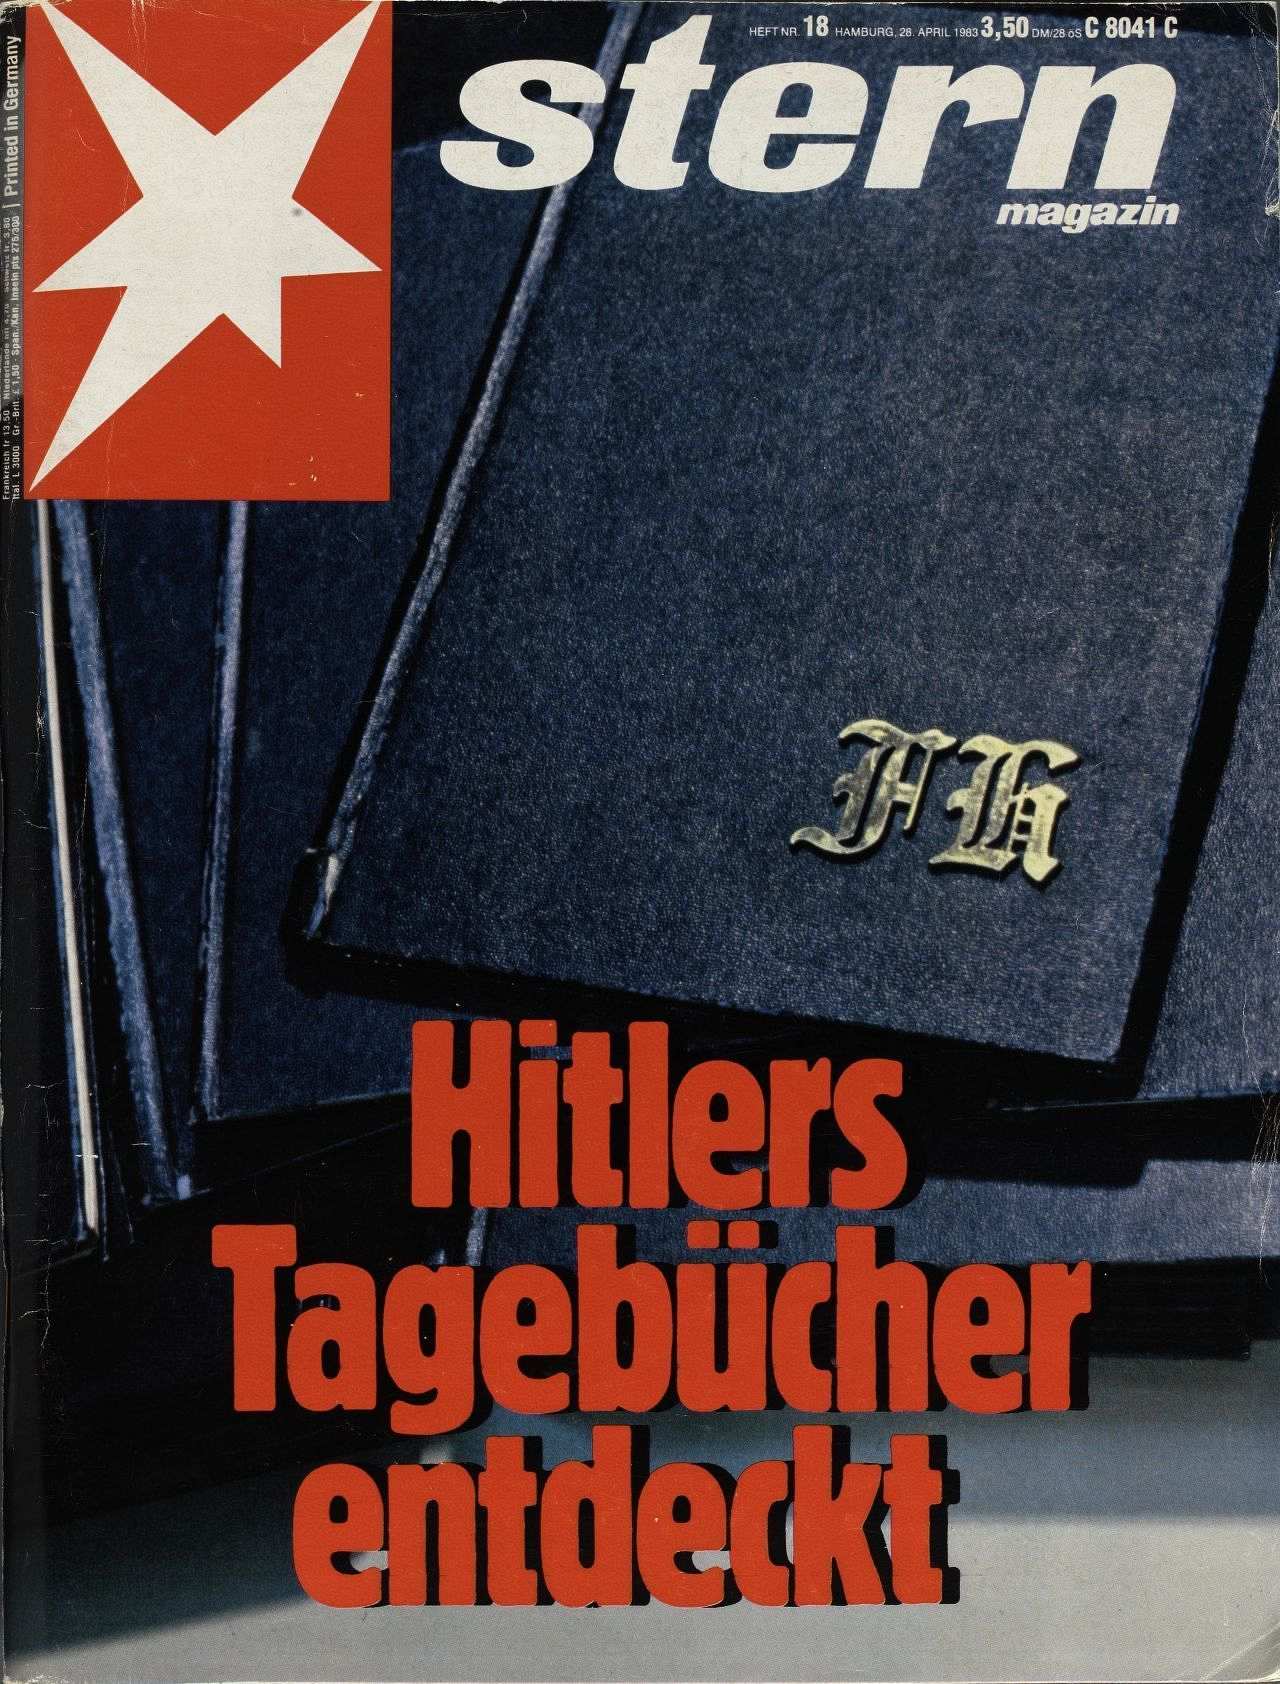 Titelseite der Stern-Ausgabe 1983,18 vom 28.04.1983. Mehrere schwarz eingebundene Bücher auf einem Stapel von oben aufgenommen; auf dem Obersten das Monogramm 'FH'; unten dreizeilige Schlagzeile 'Hitlers Tagebücher entdeckt'.